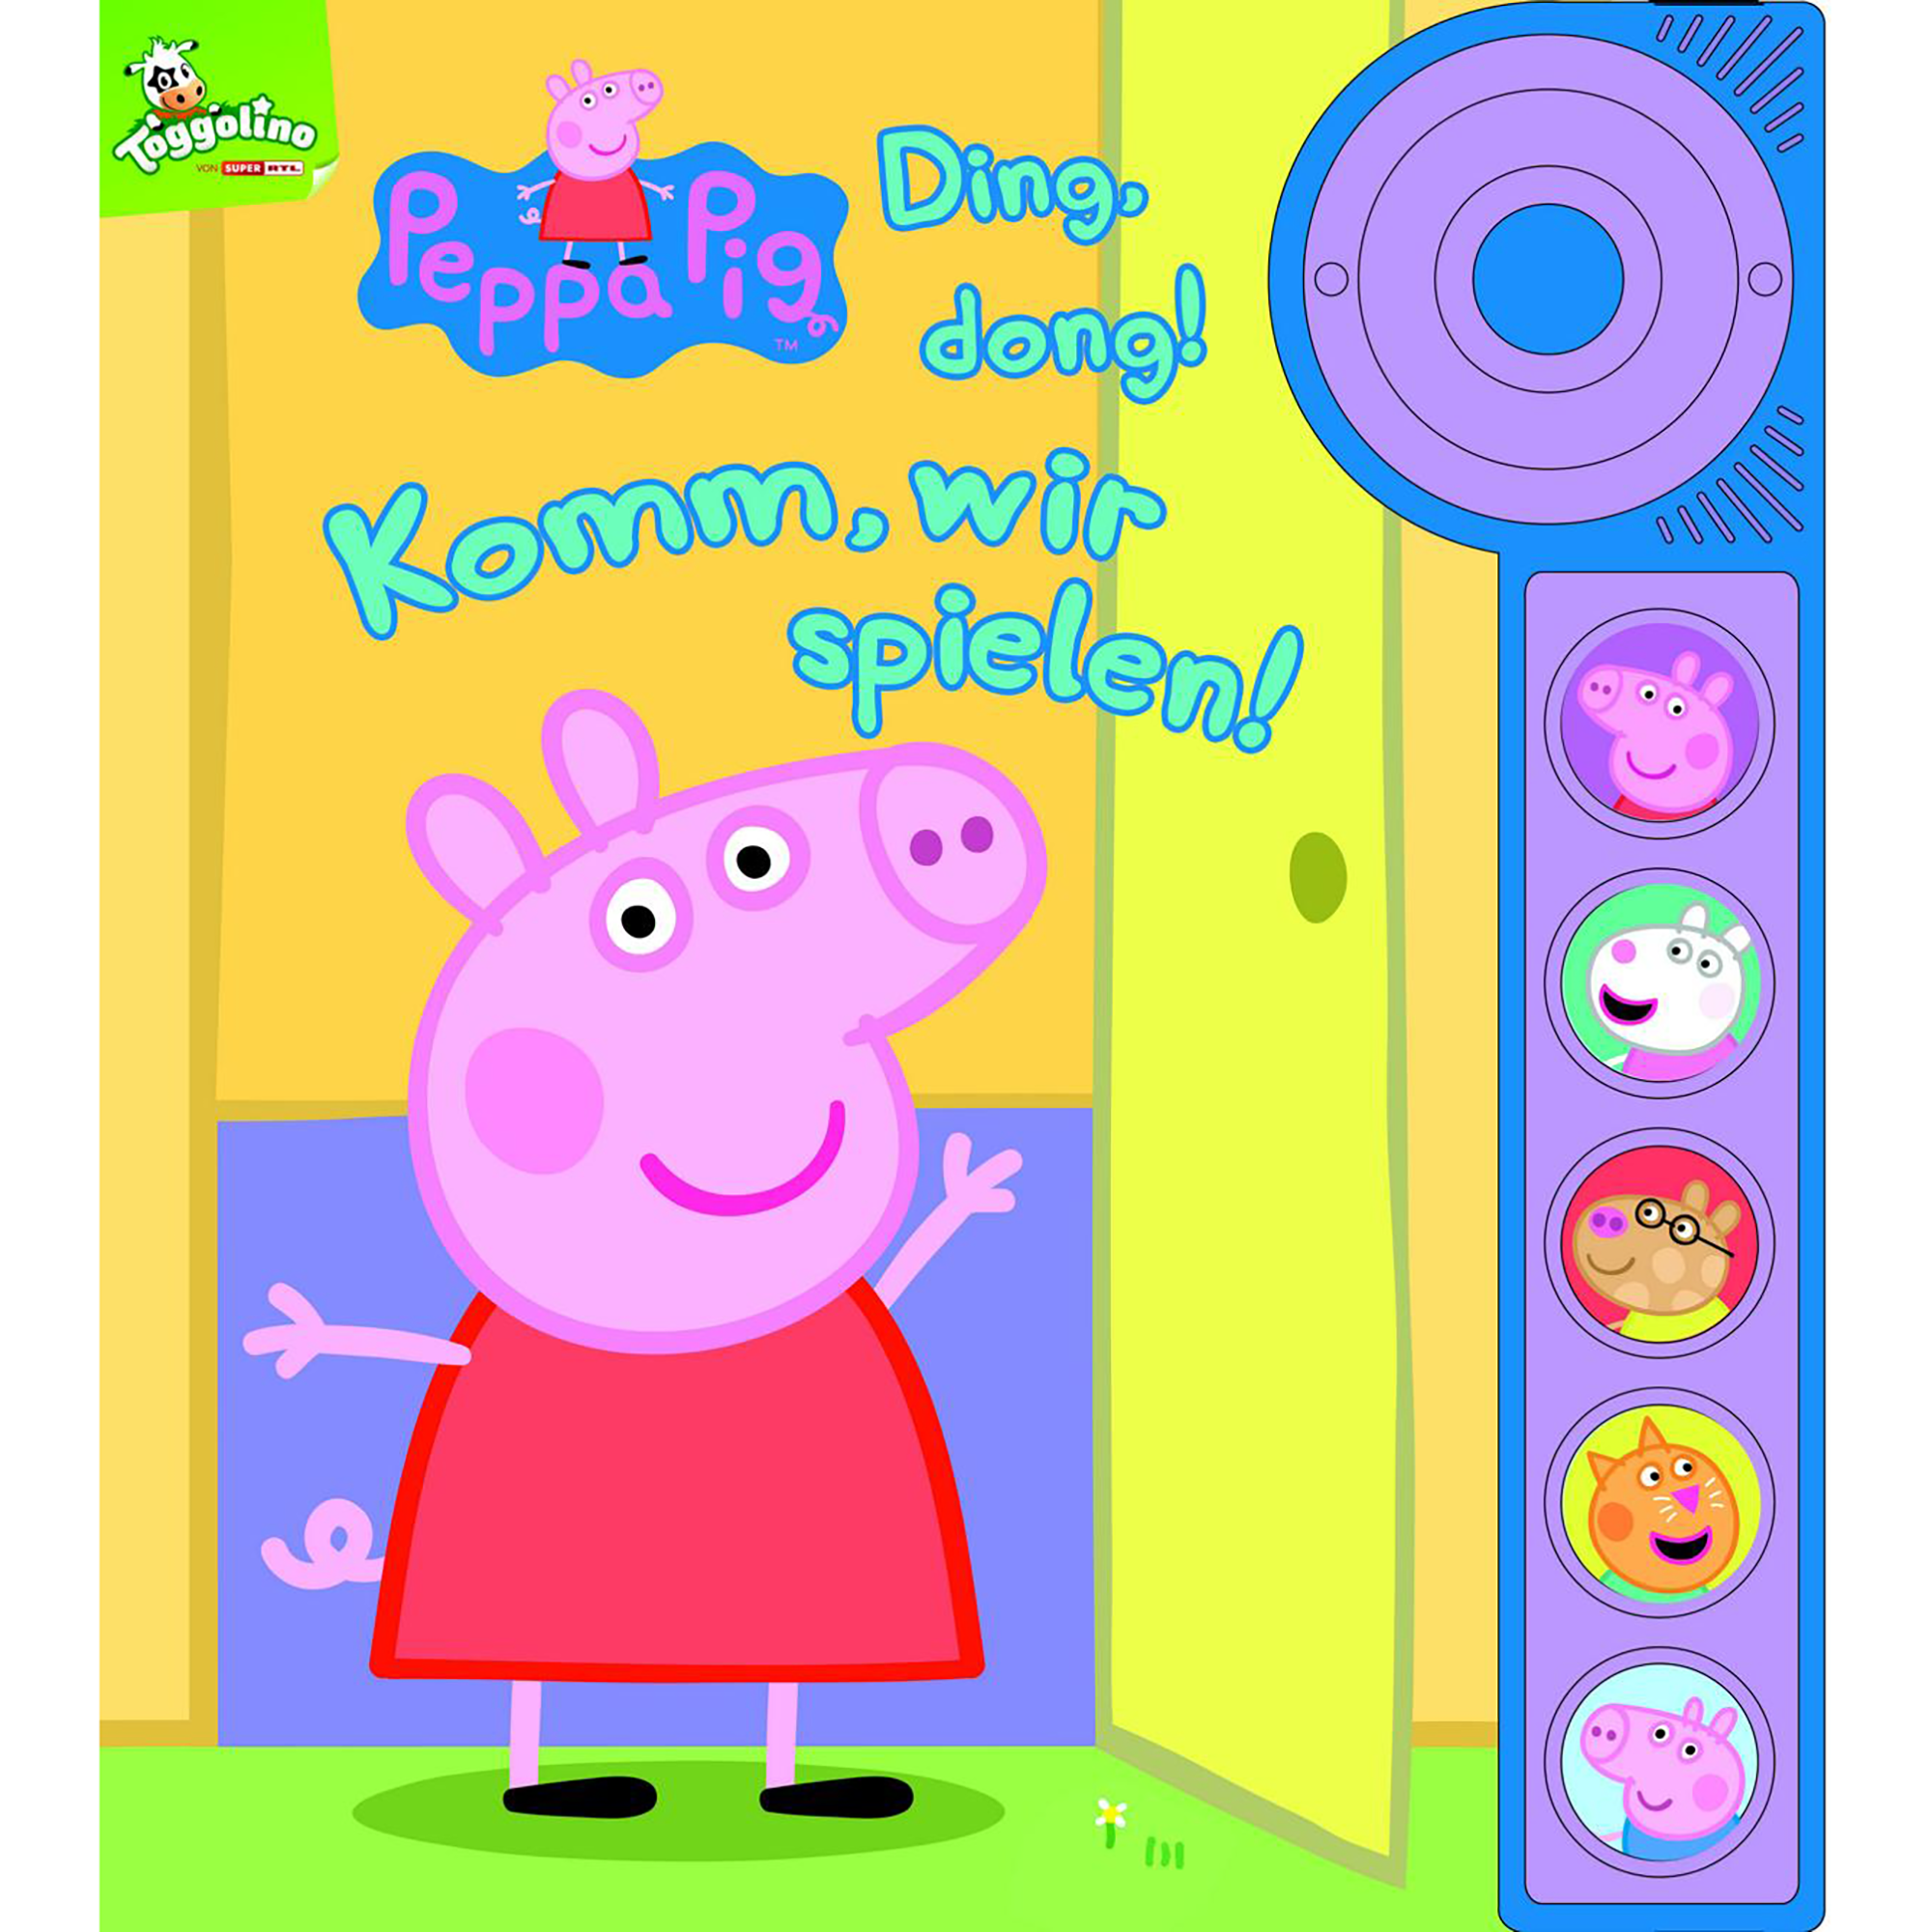 Peppa Pig - Ding, dong! Komm, wir spielen! Phoenix 2000576307402 1